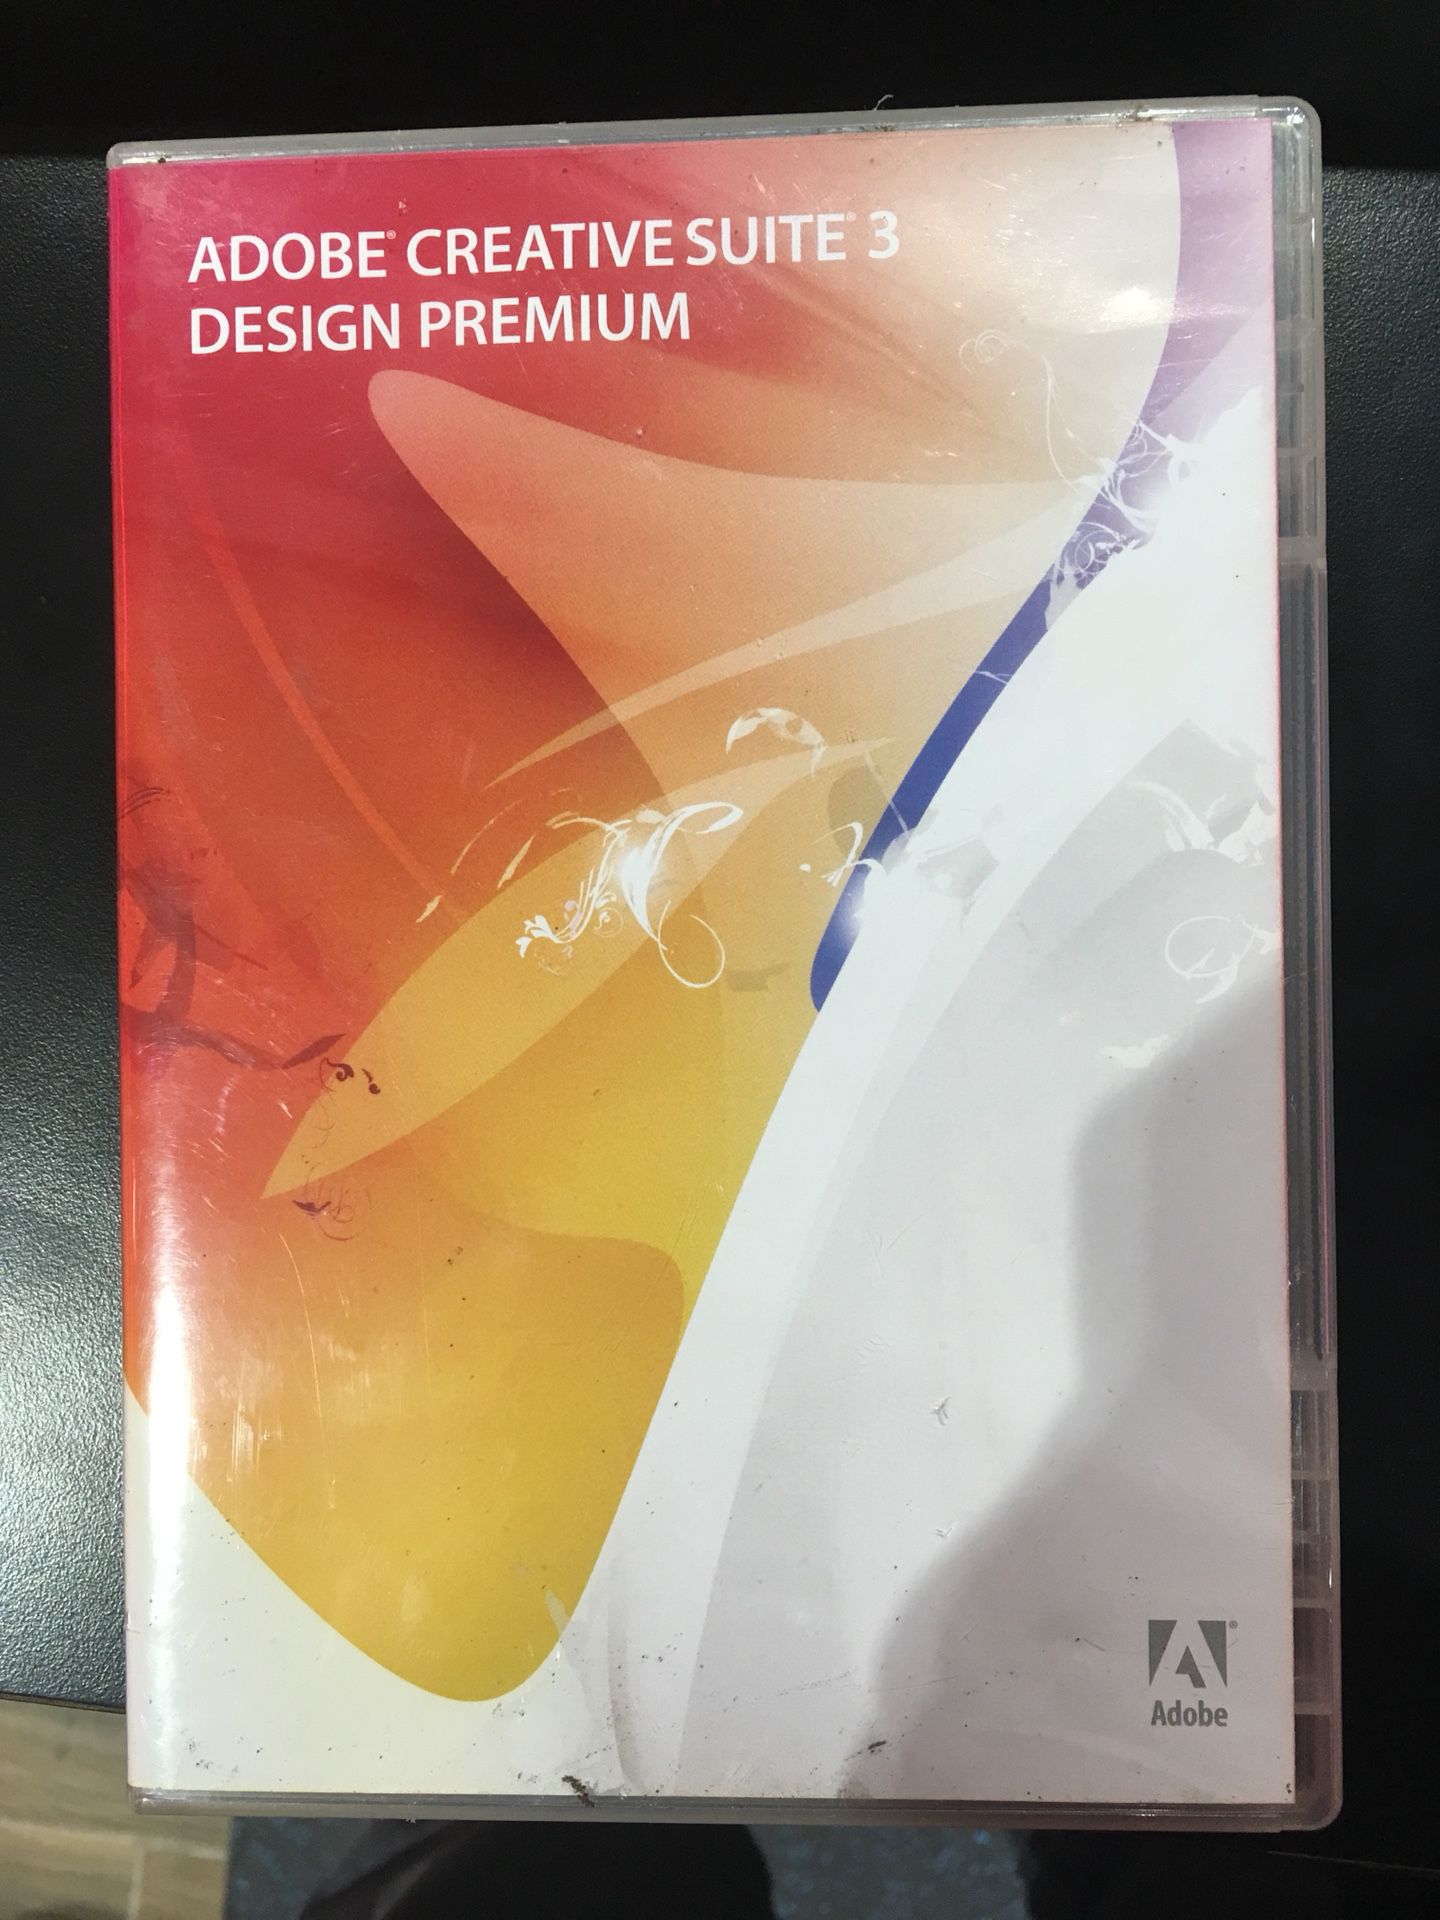 Adobe Creative Suite 3 Premium including Photoshop, Adobe Illustrator, Dreamweaver Etc